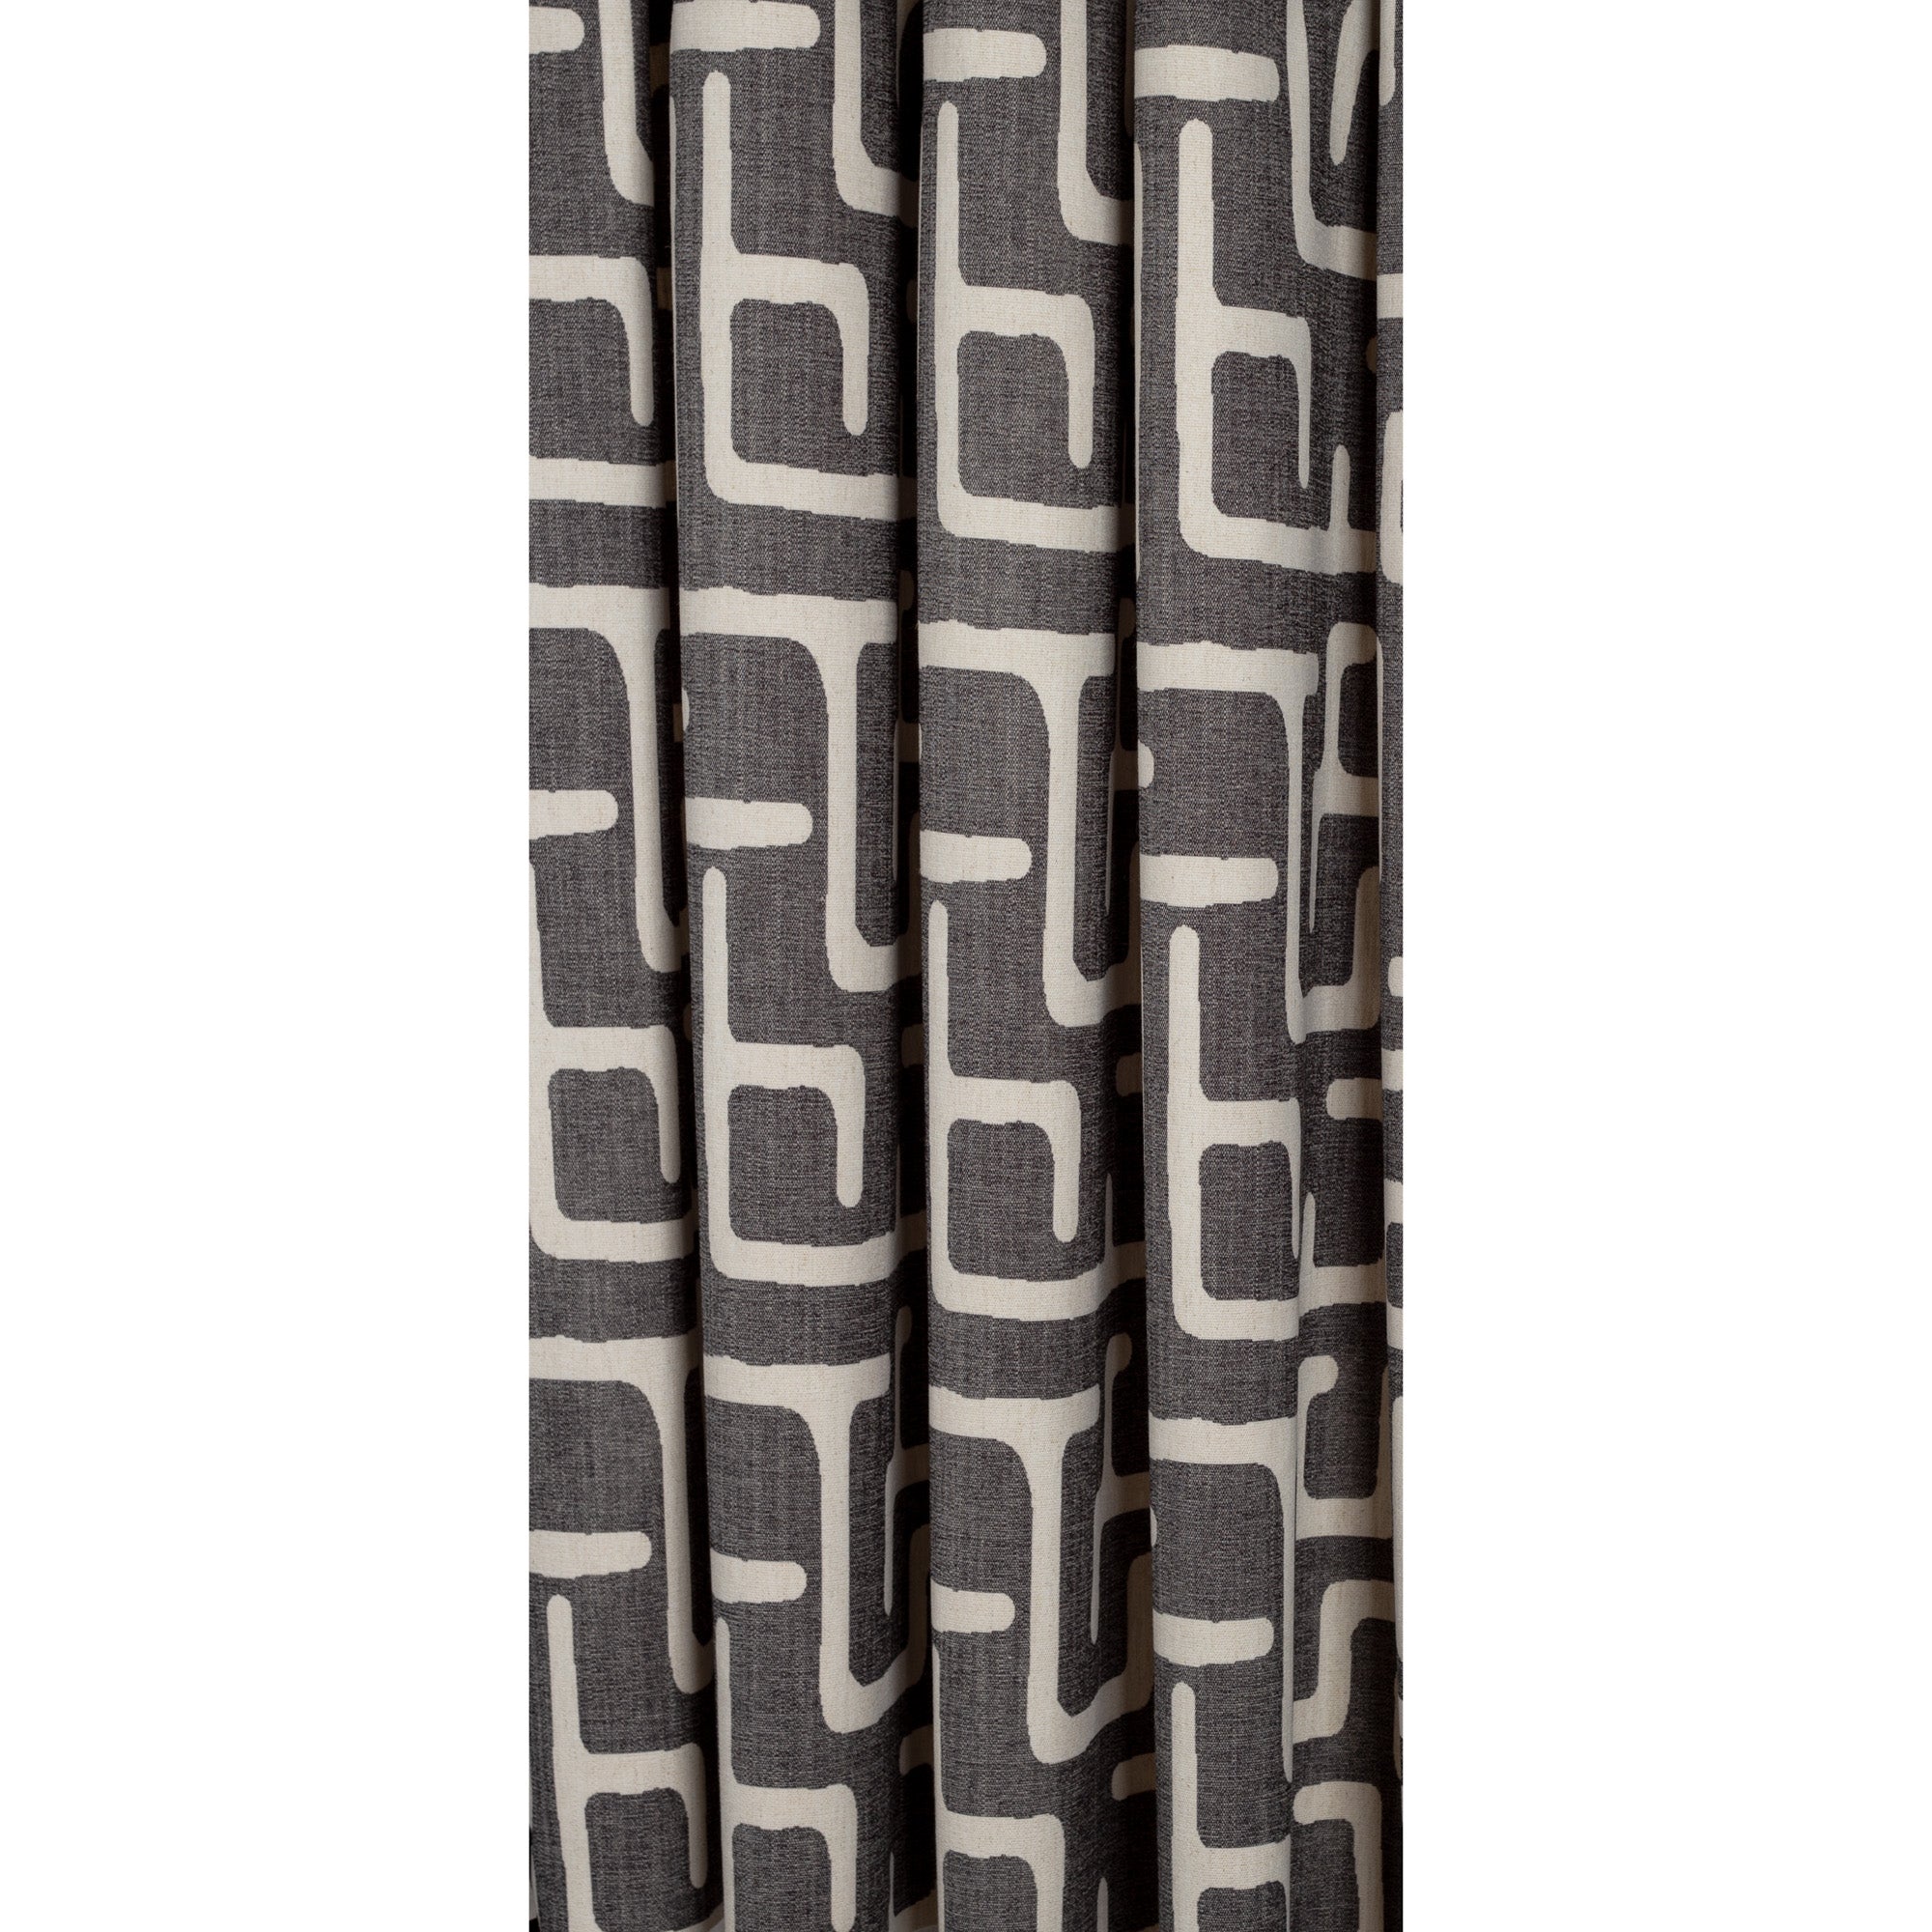 karru dark gray and beige kuba inspired print drapery fabric 